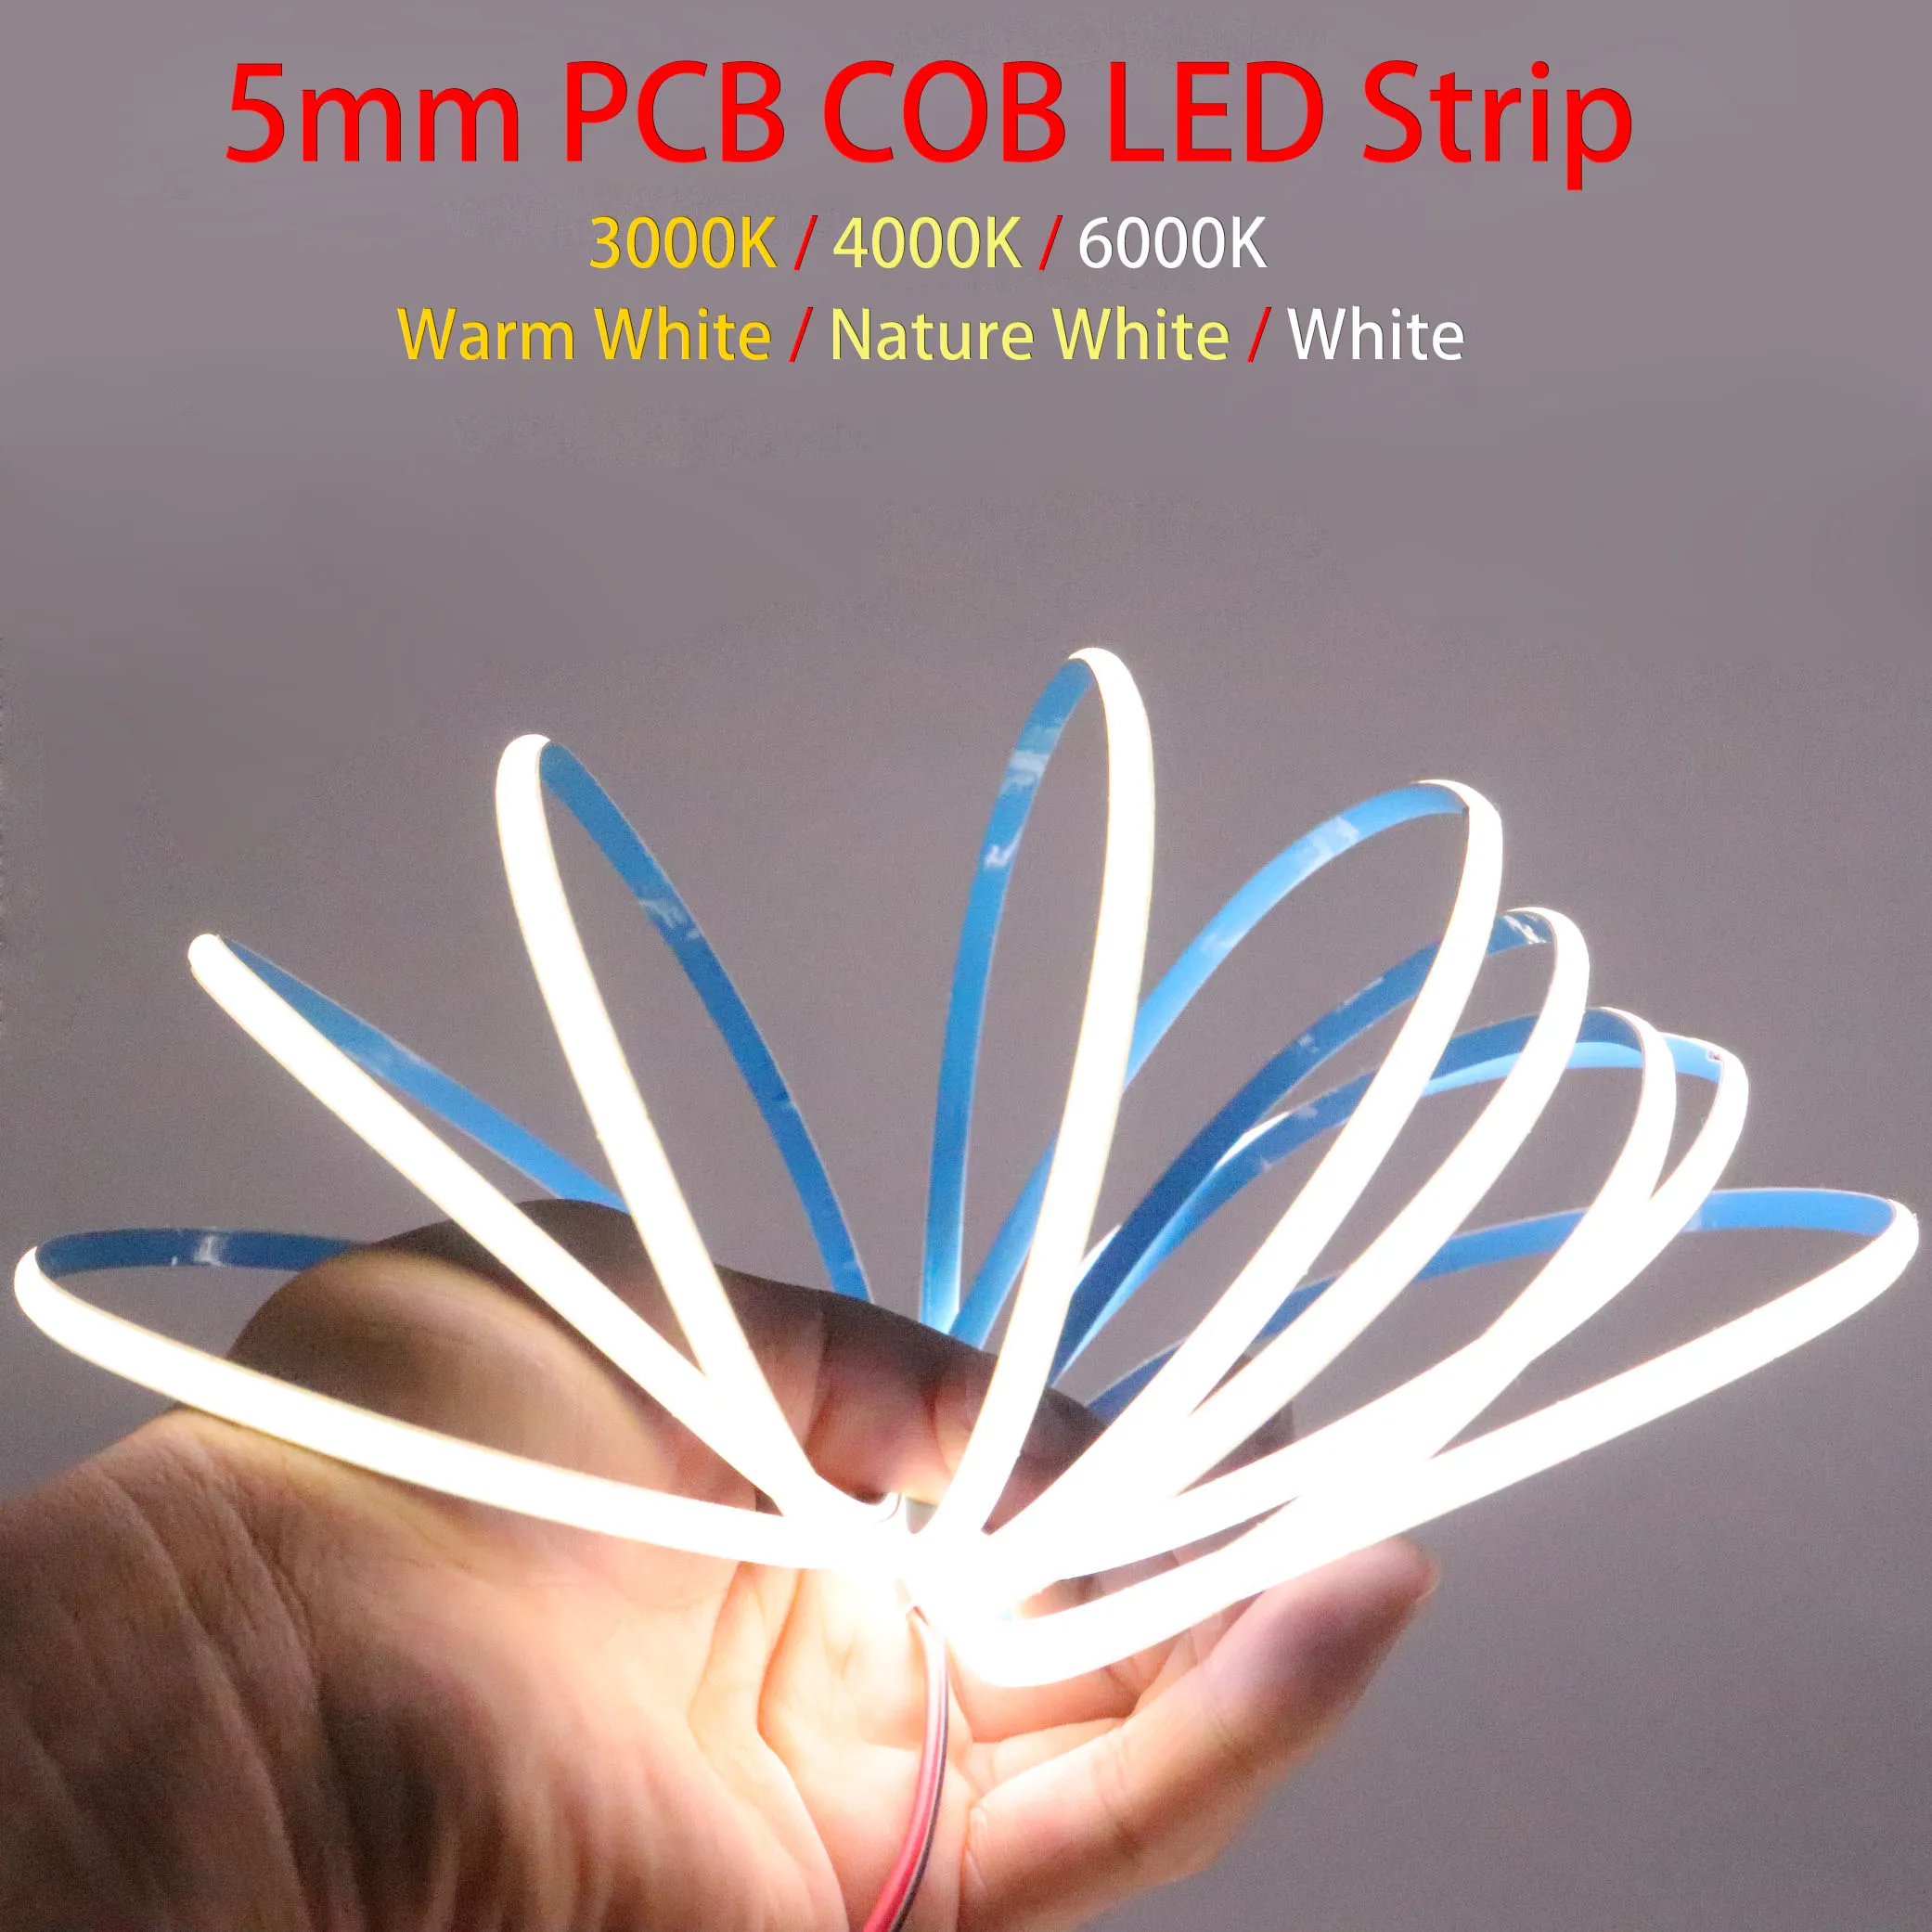 Super mince bande de LED COB 5mm 384LED s/m barre lumineuse souple DC12V/24V blanc froid chaud pour l'éclairage de décor 3000K 4000K 6000K